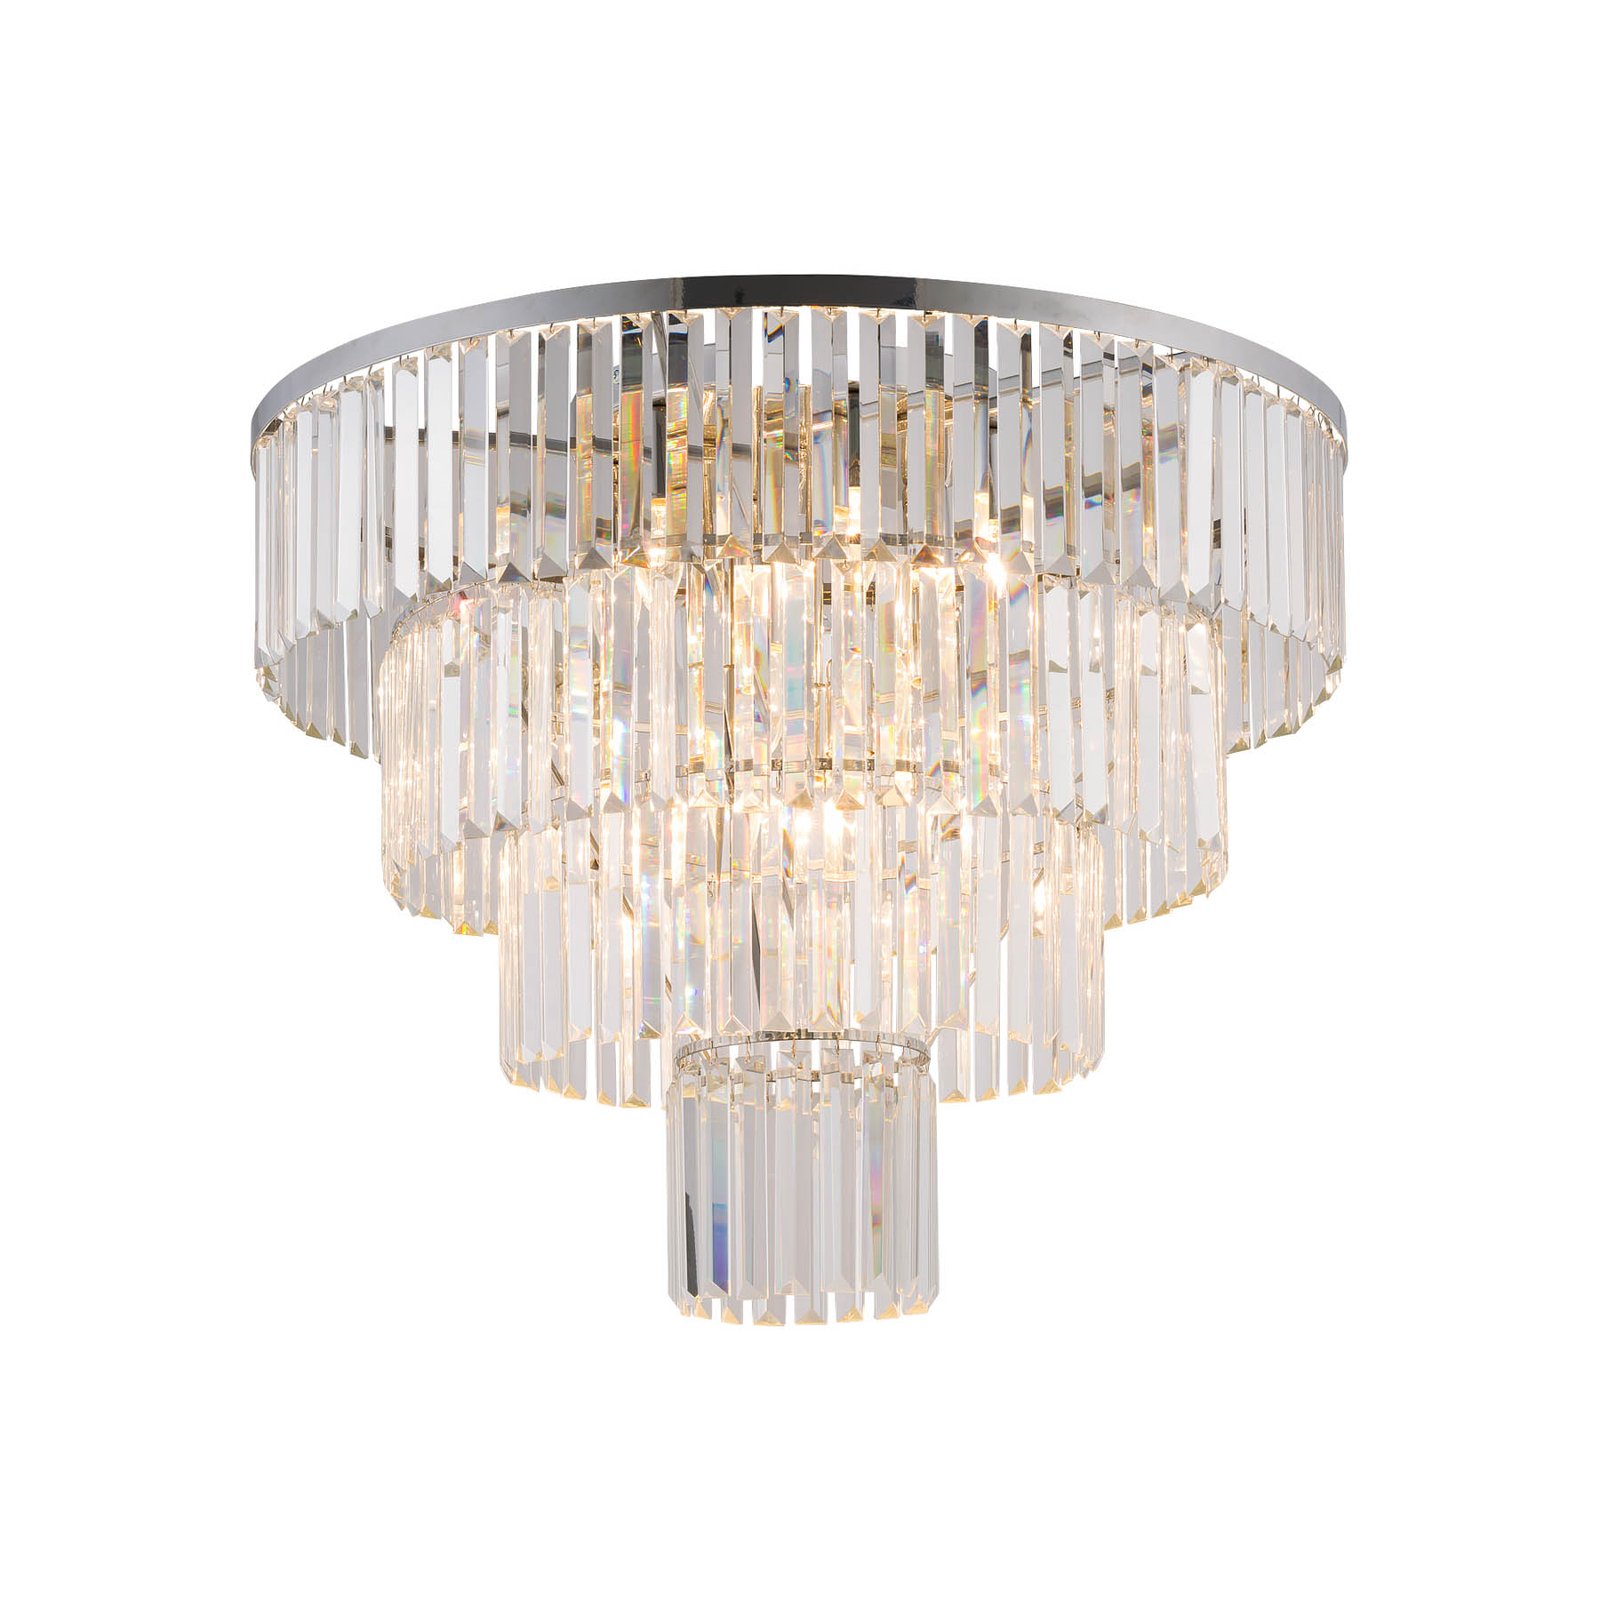 Lampa sufitowa Cristal, przezroczysty/srebrny, Ø 71 cm